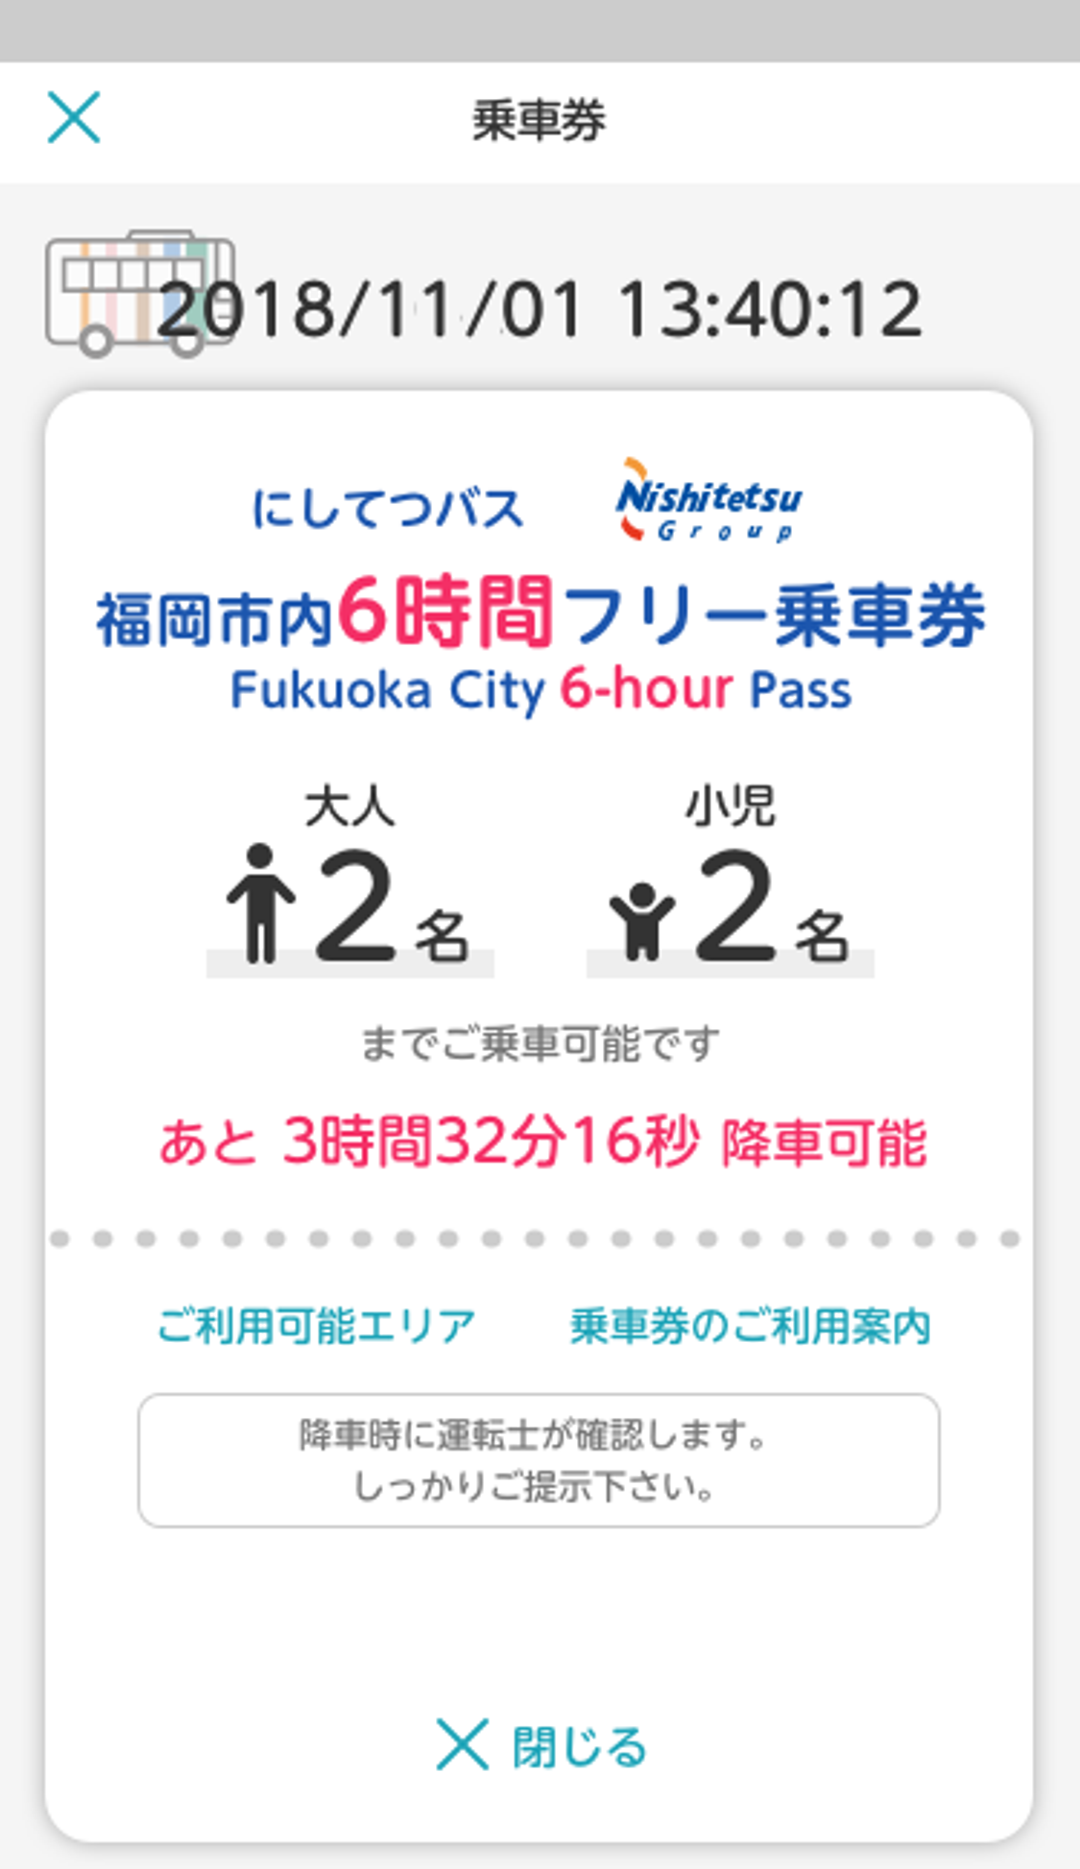 トヨタと西鉄が福岡市でマルチモーダルモビリティサービス「my route」の実証実験を開始